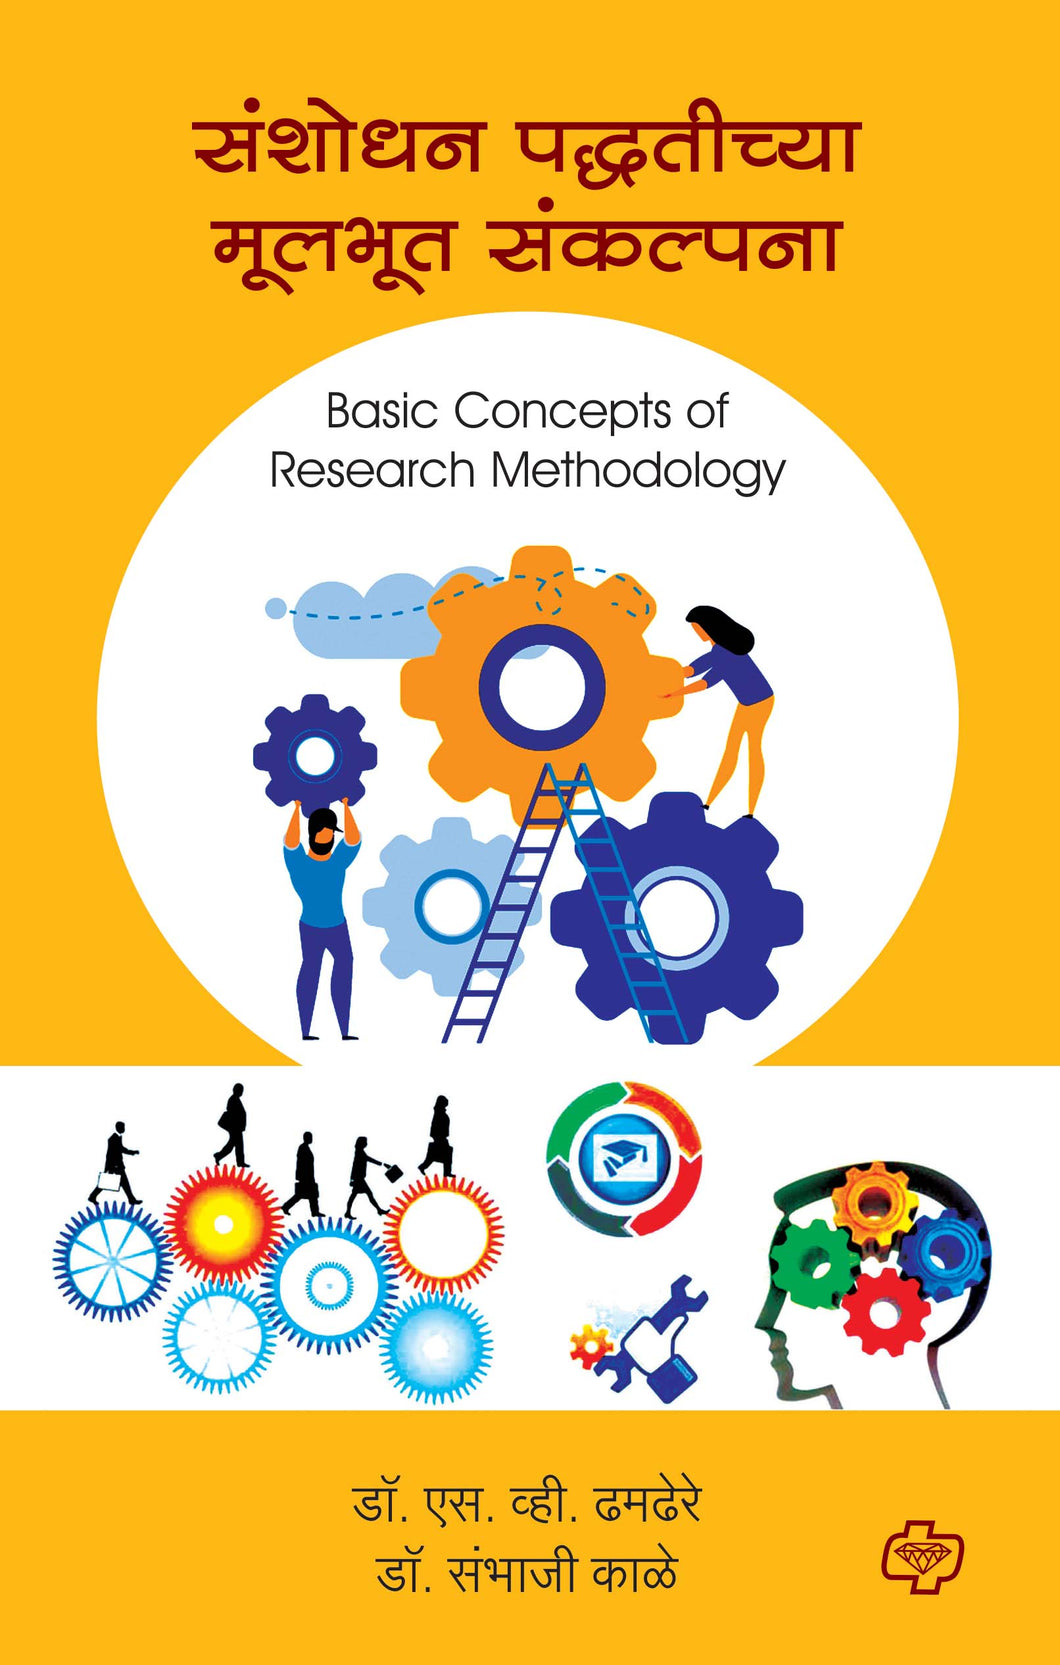 संशोधन पद्धतीच्या मूलभूत संकल्पना (Basic Concepts of Research Methodology) 

(सत्र ३ व ४ एकत्रित)